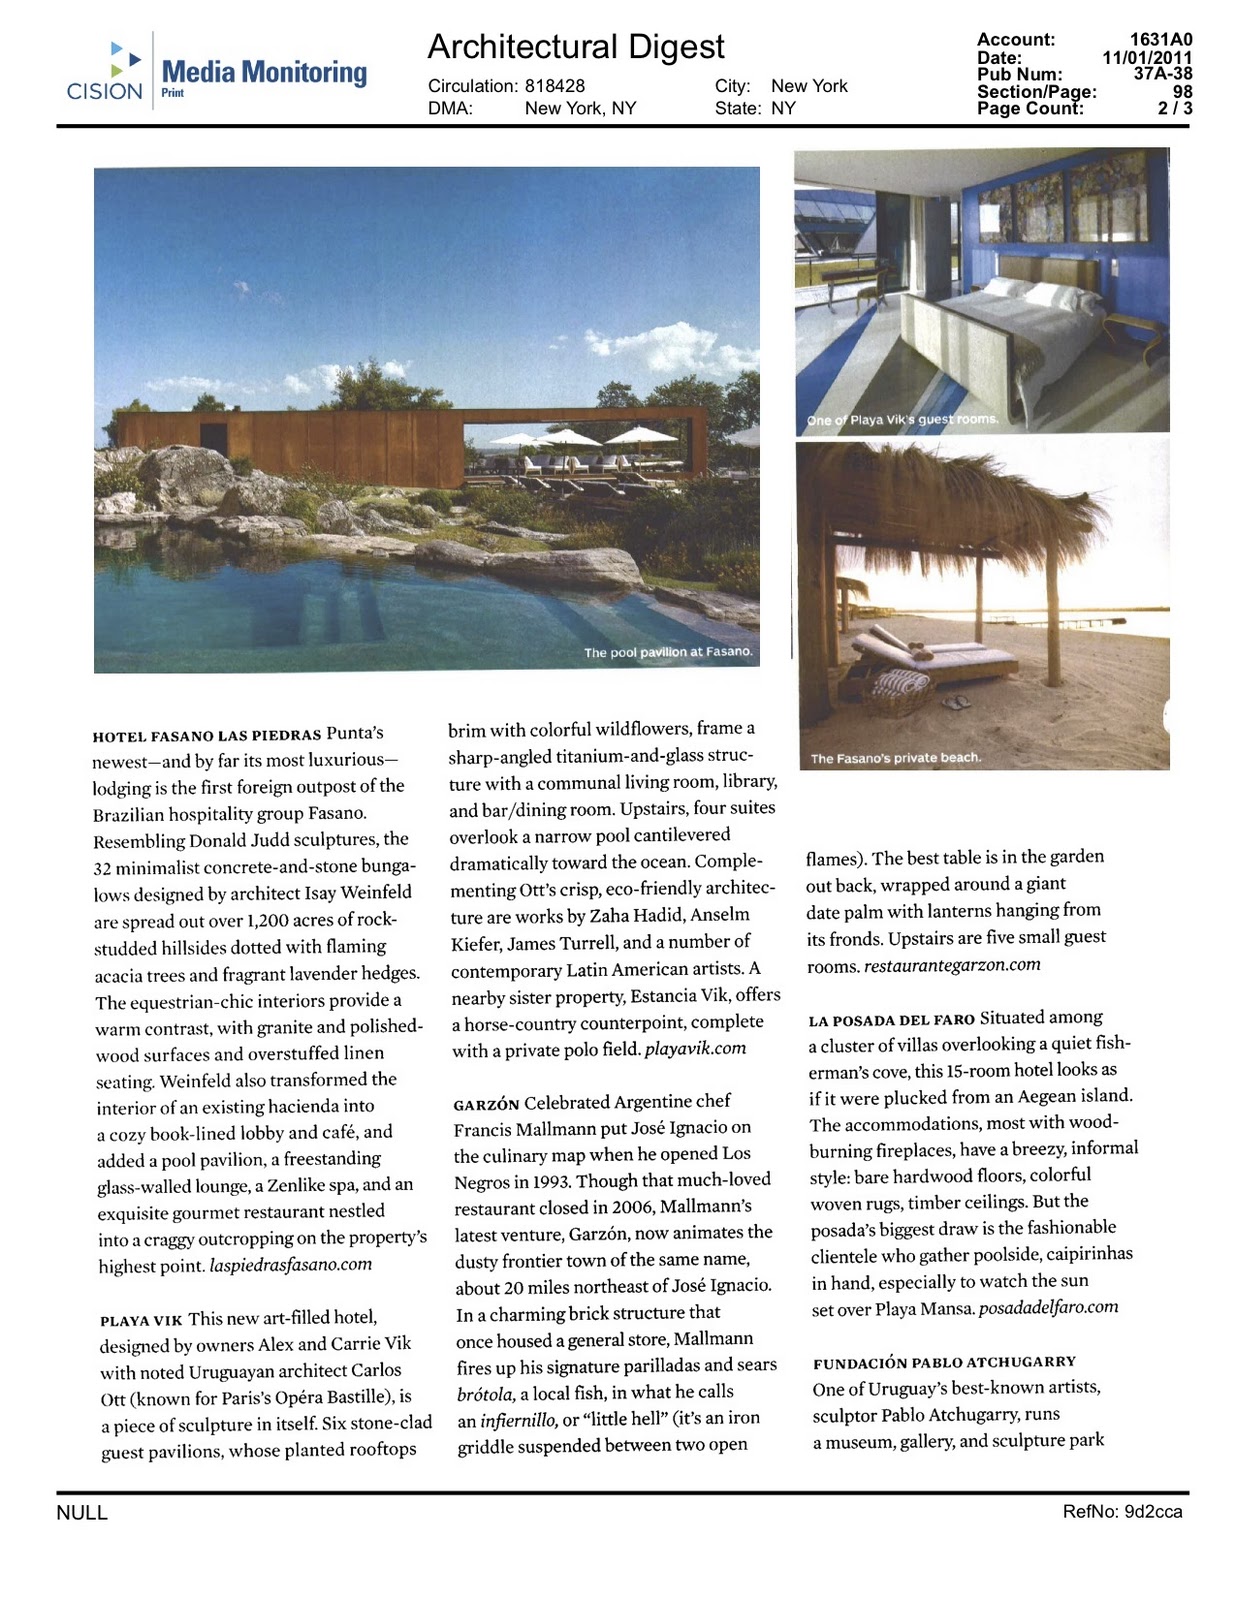 Arquitectural Digest habla de Punta del Este y destaca al Hotel Fasano ...